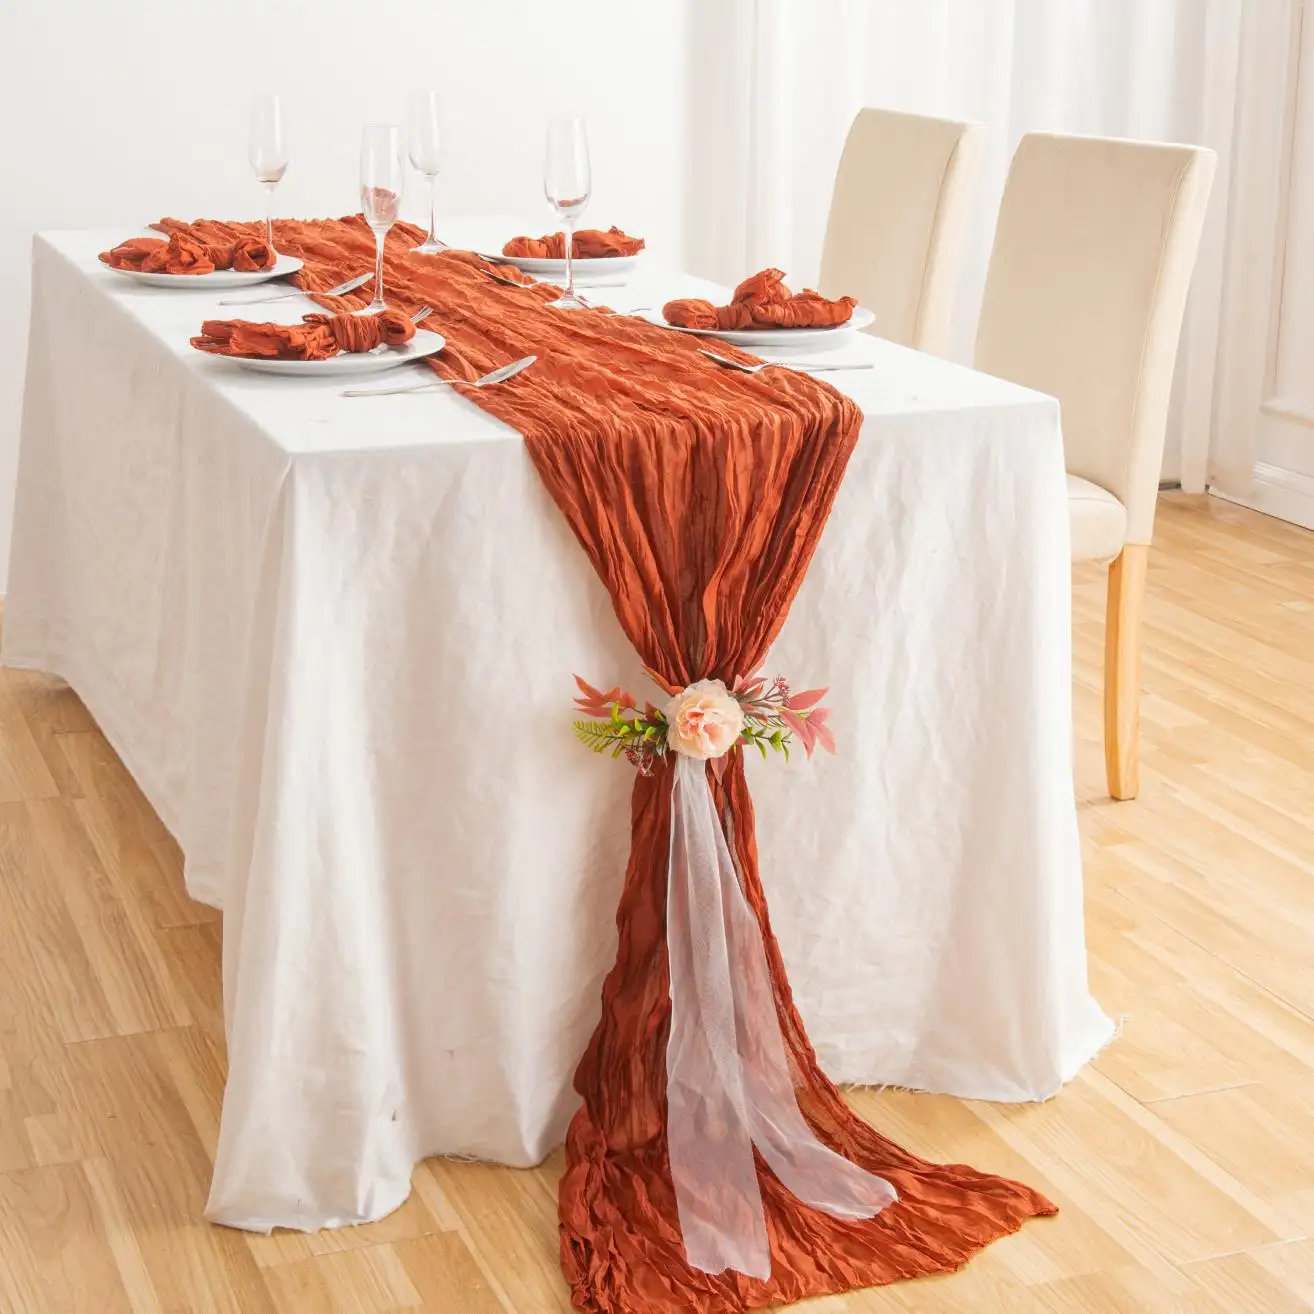 Moderno bohemio rústico arrugado mantel fiesta Mesa decoración poliéster fibra queso tela camino de mesa para boda